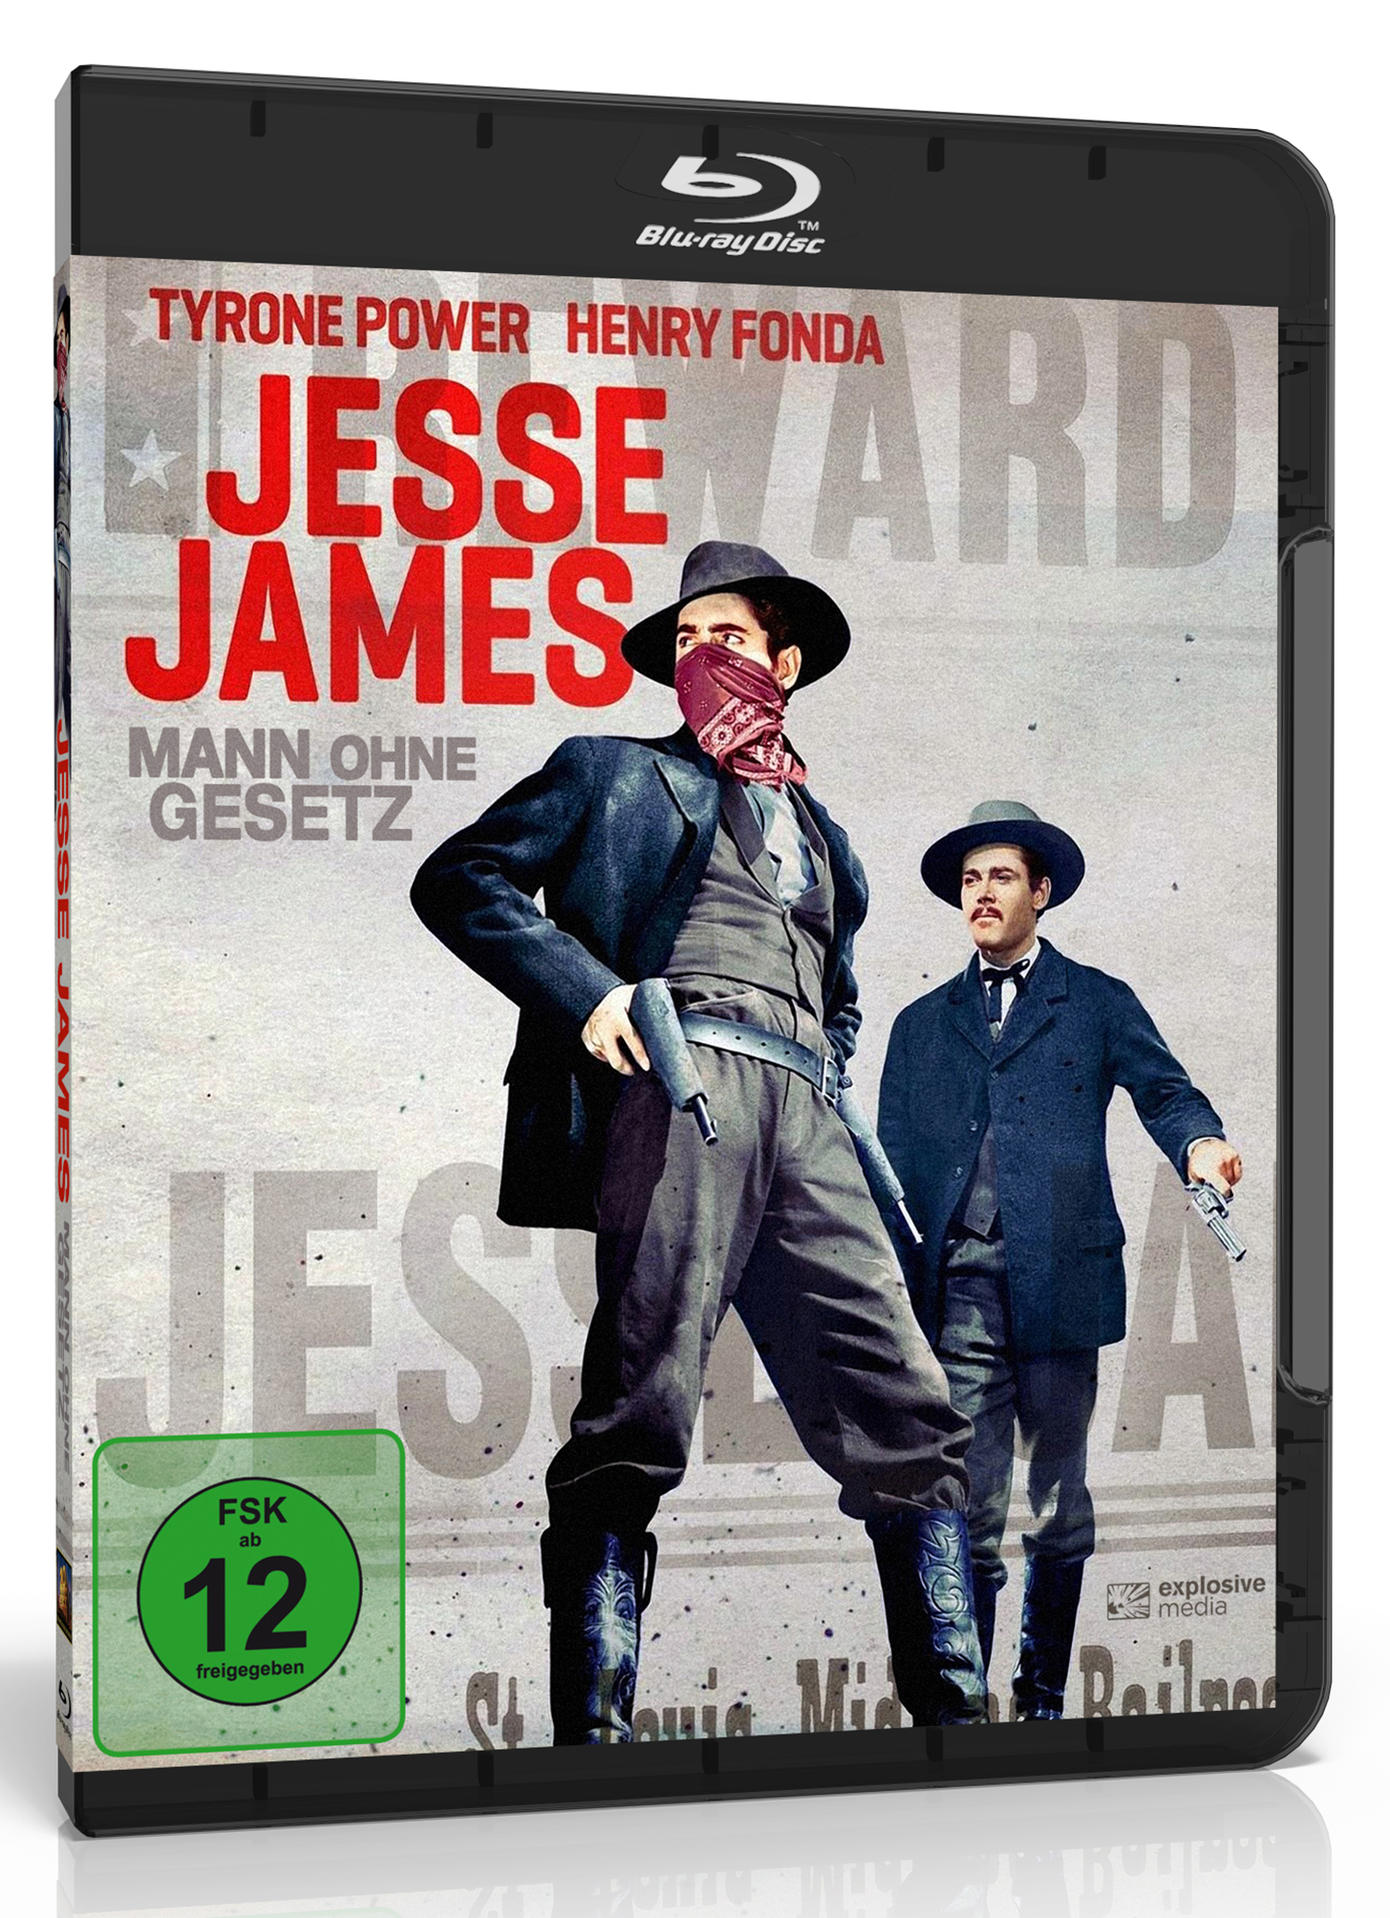 ohne - Blu-ray James Mann Jesse Gesetz